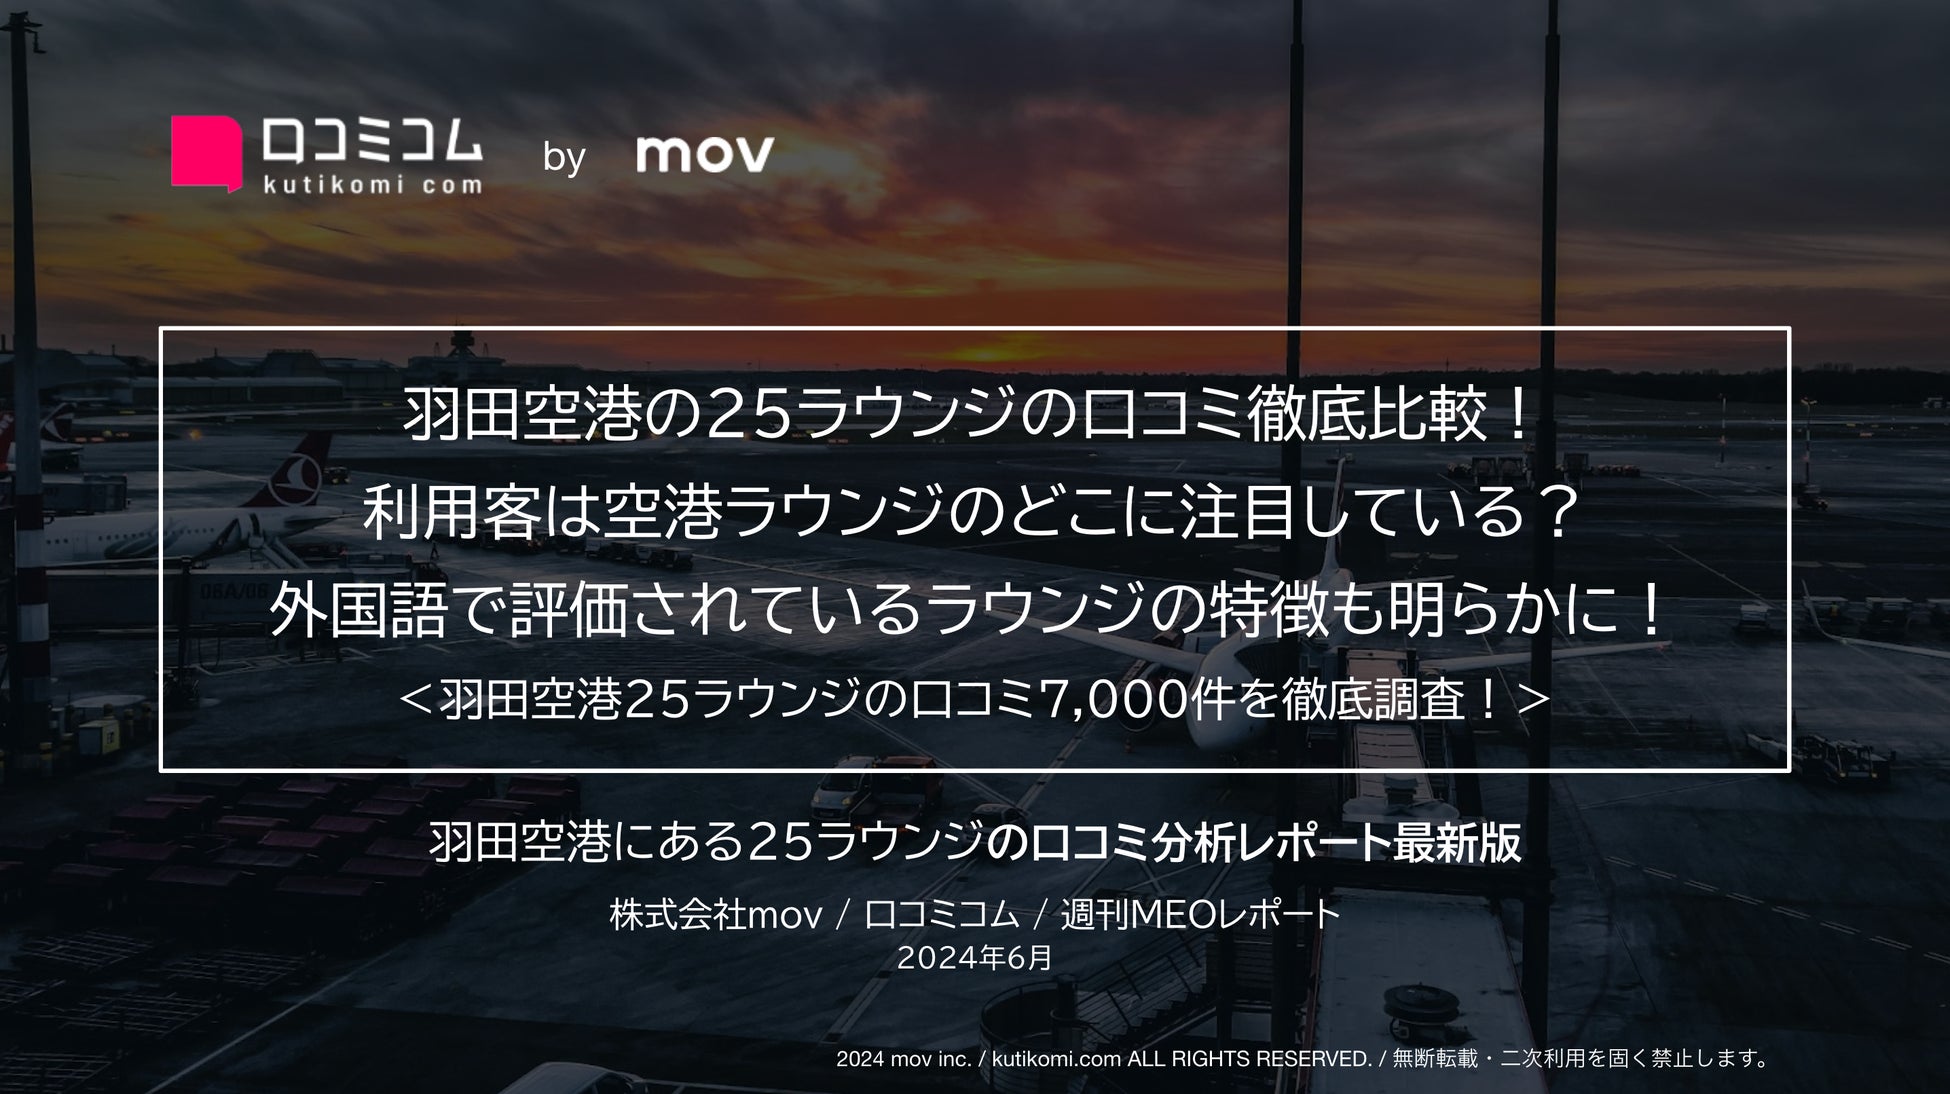 【福島県大熊町】大熊町交流ゾーンのホームページがリニューアルオープンしました。